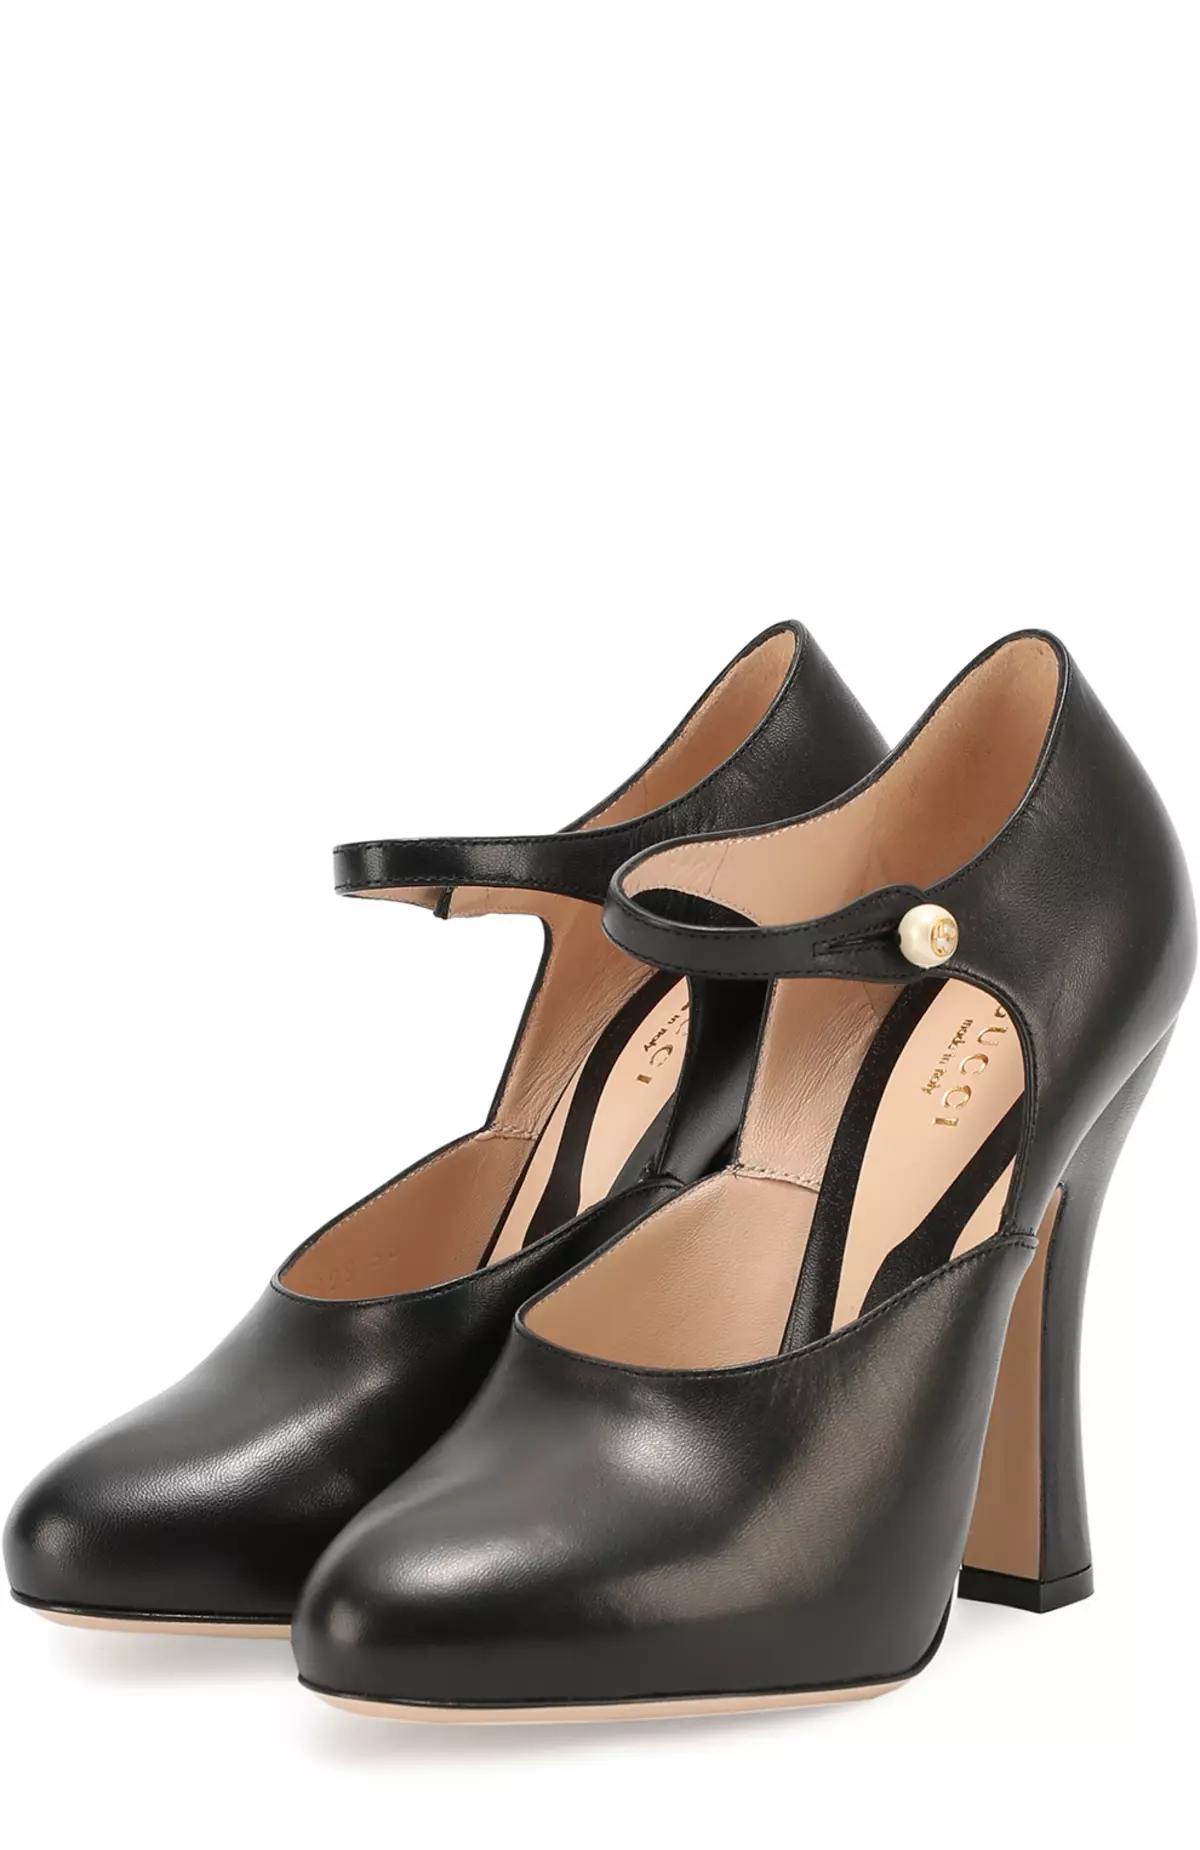 Leather Heel Kengät (46 kuvaa): Naisten nahka mallit matalalla ja korkokengällä 2395_5